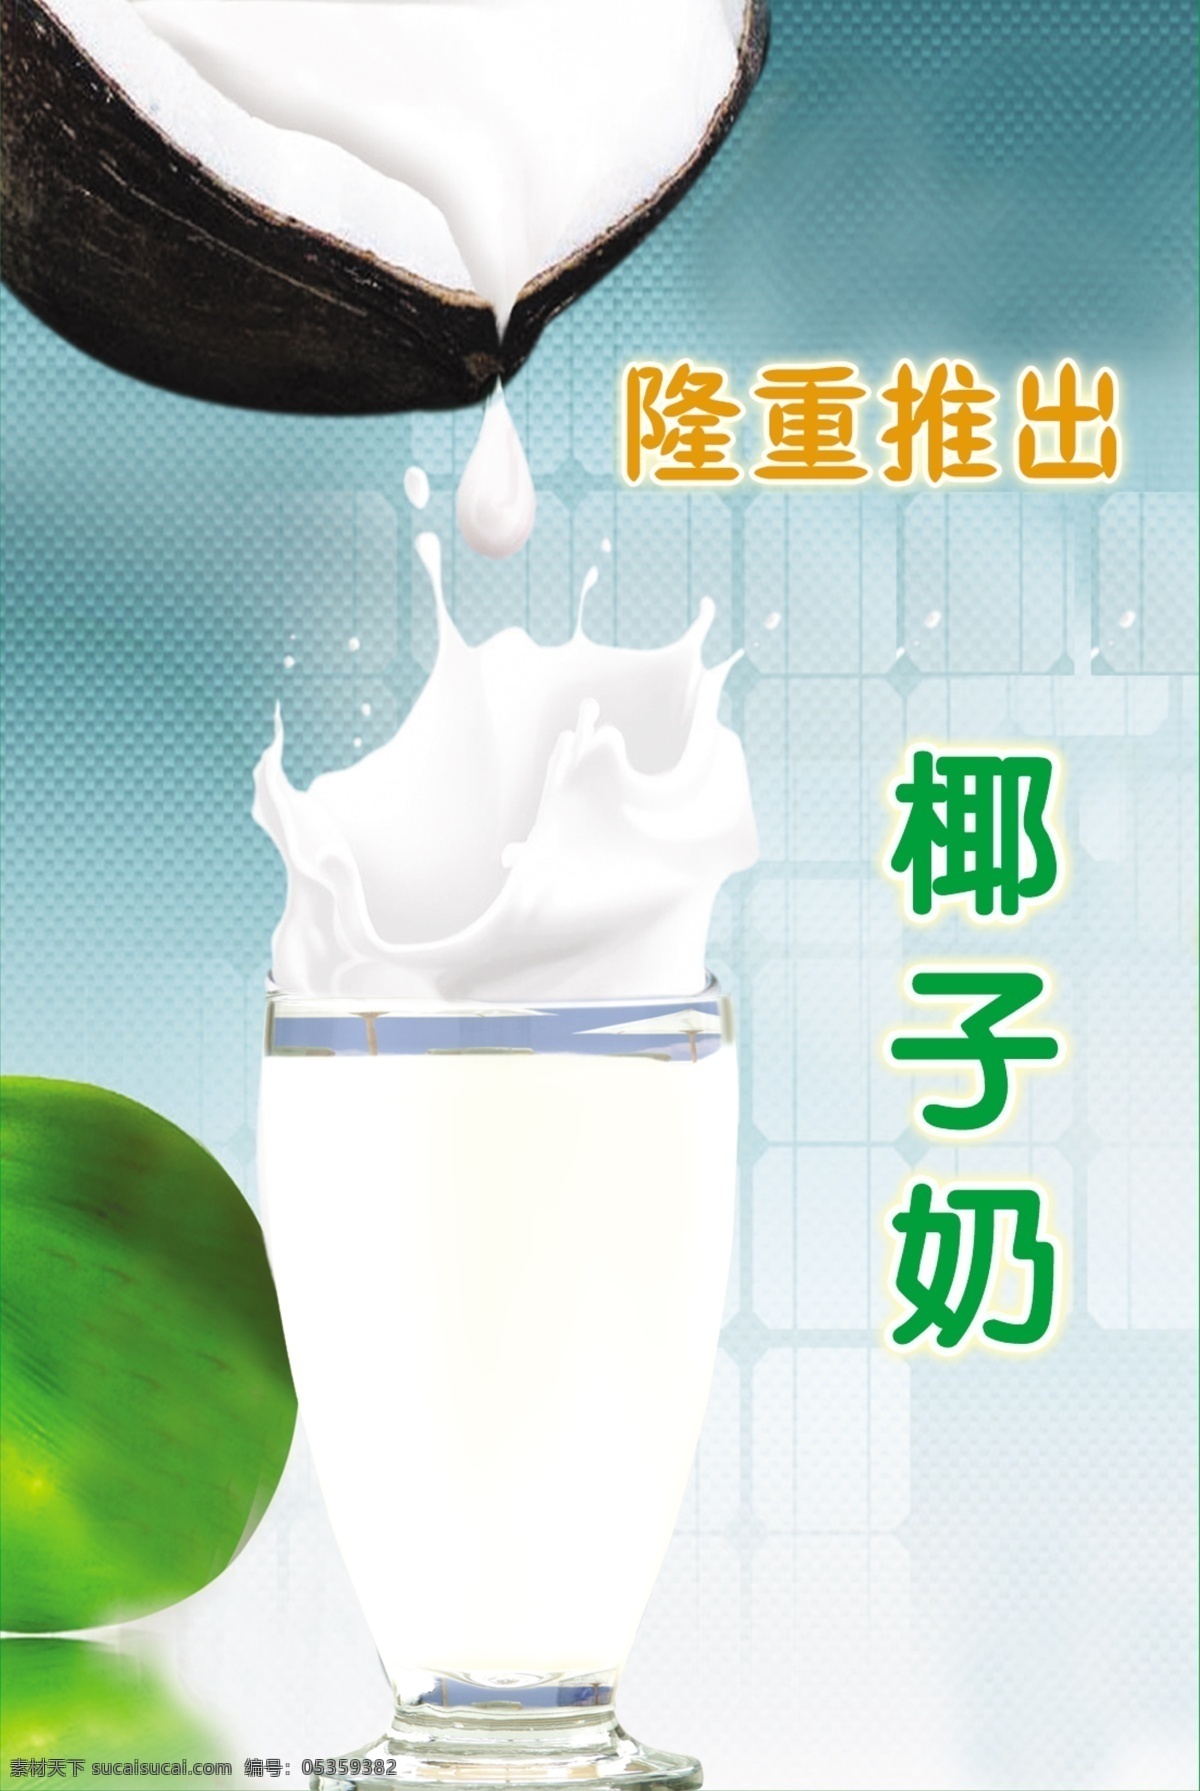 椰子 奶 分层 不 细 椰子奶 椰子汗 广告设计模板 源文件